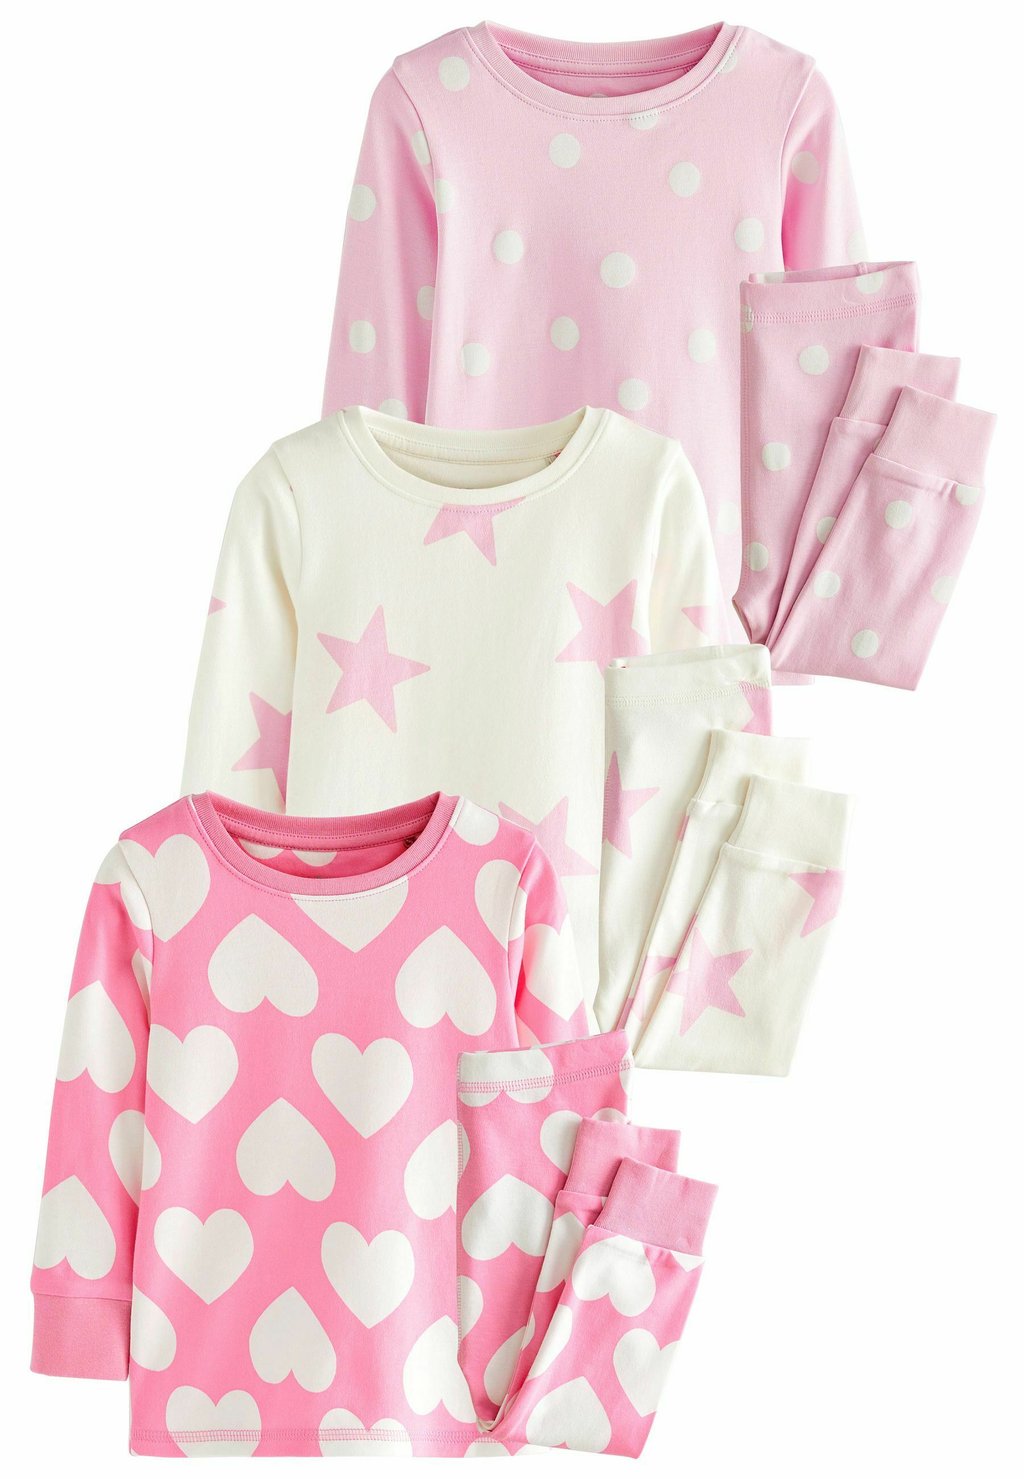 Пижамы Heart, Spot And Star Pyjamas 3 Pack Next, цвет pink white